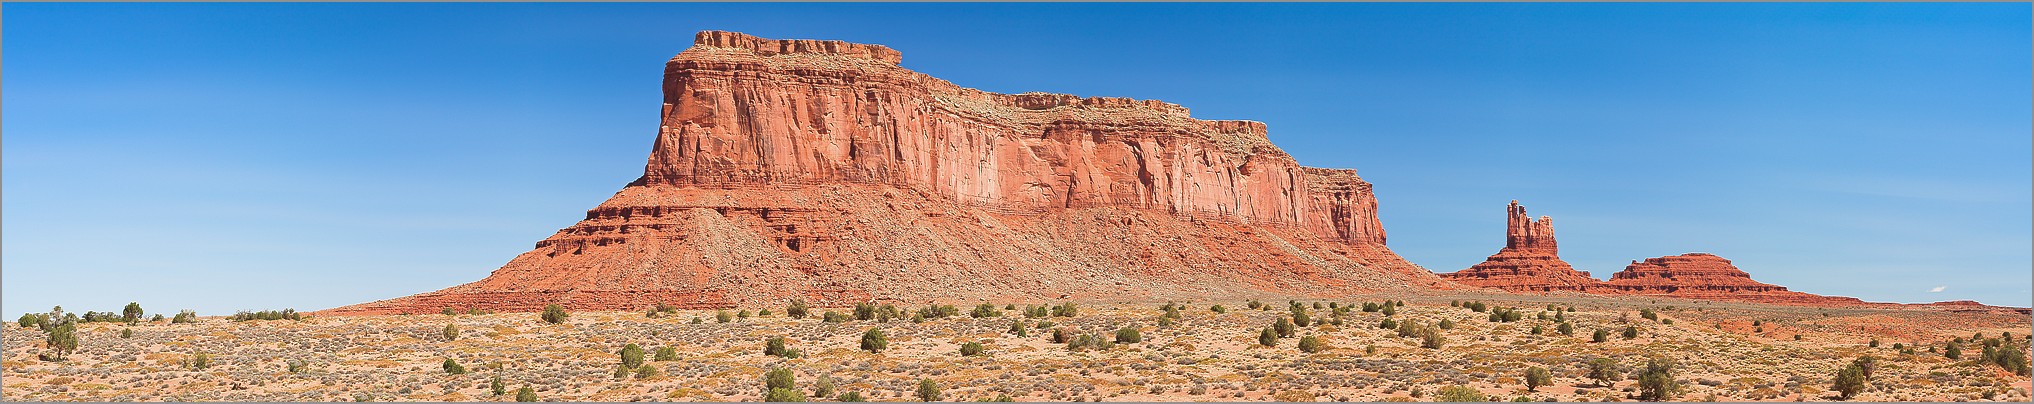 Monument Valley - Navajo Tribal Park - Eagle Mesa, the Setting Hen en vue panomarique réalisée avec CANON 5D + EF 100 macro F2,8